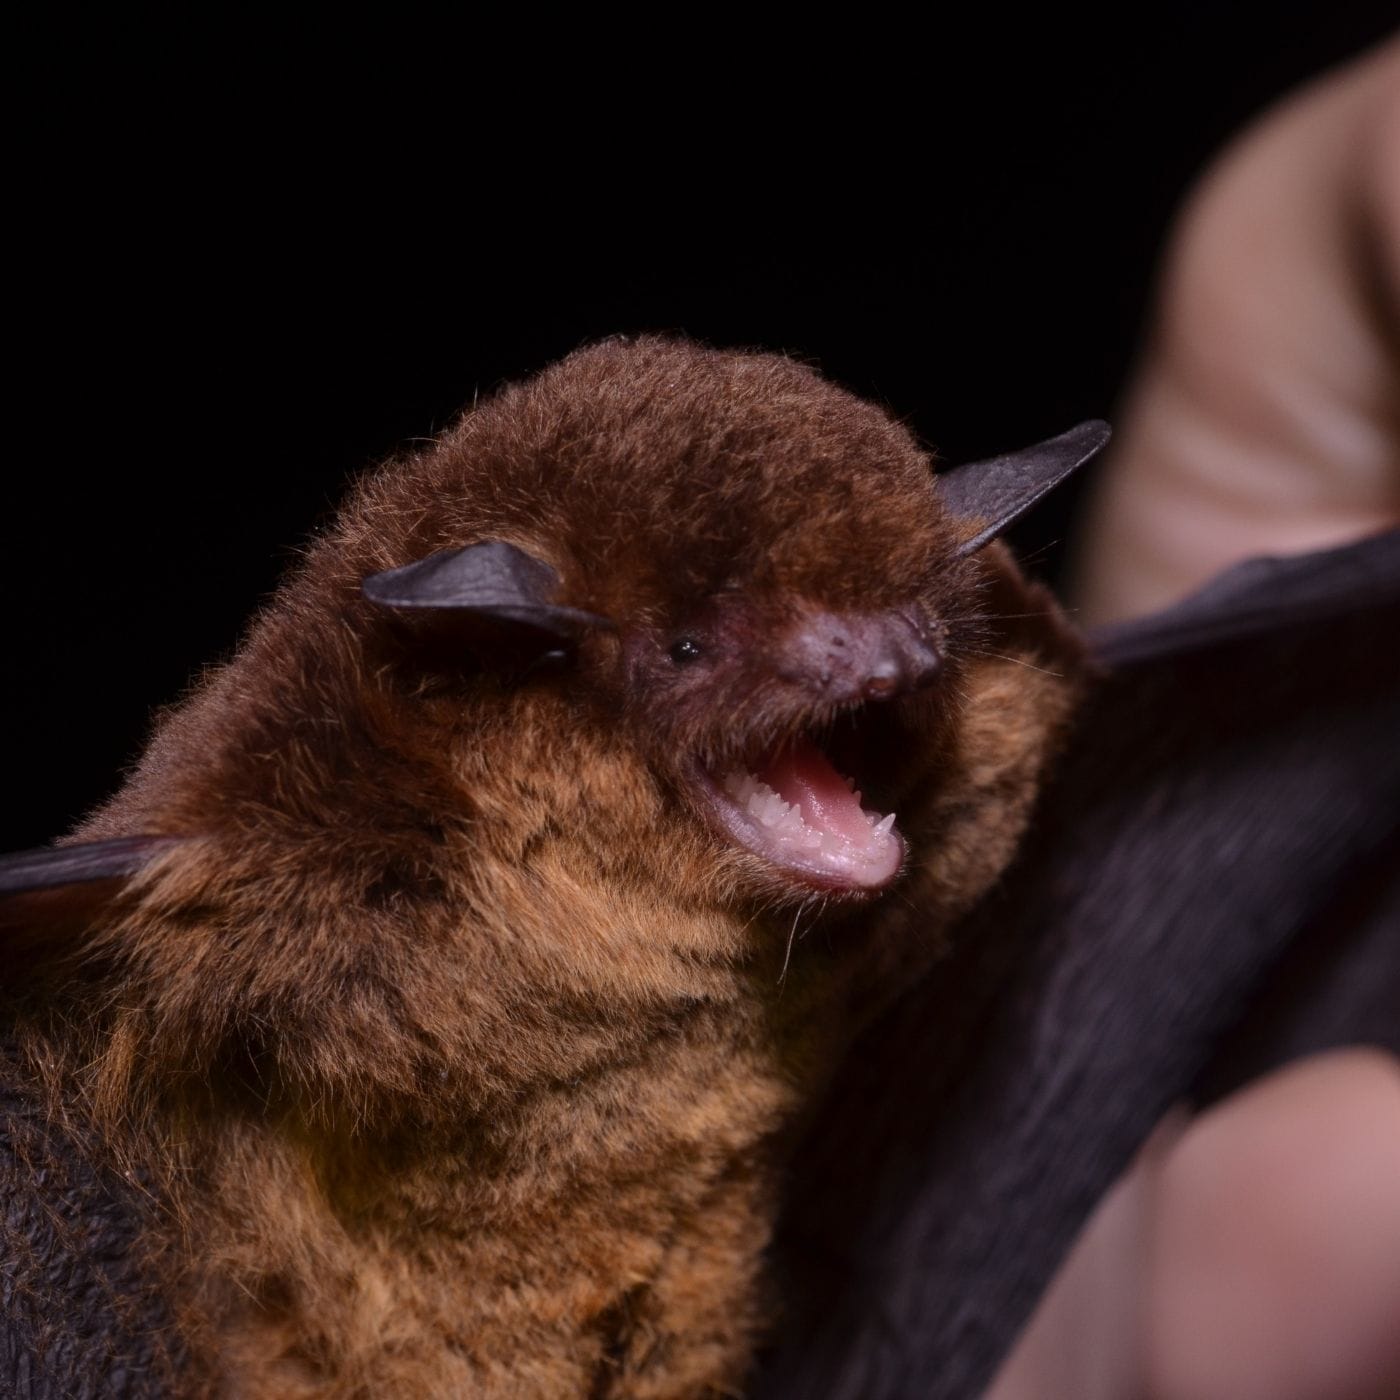 1st midges, now a bat: Joba finds unusual trouble